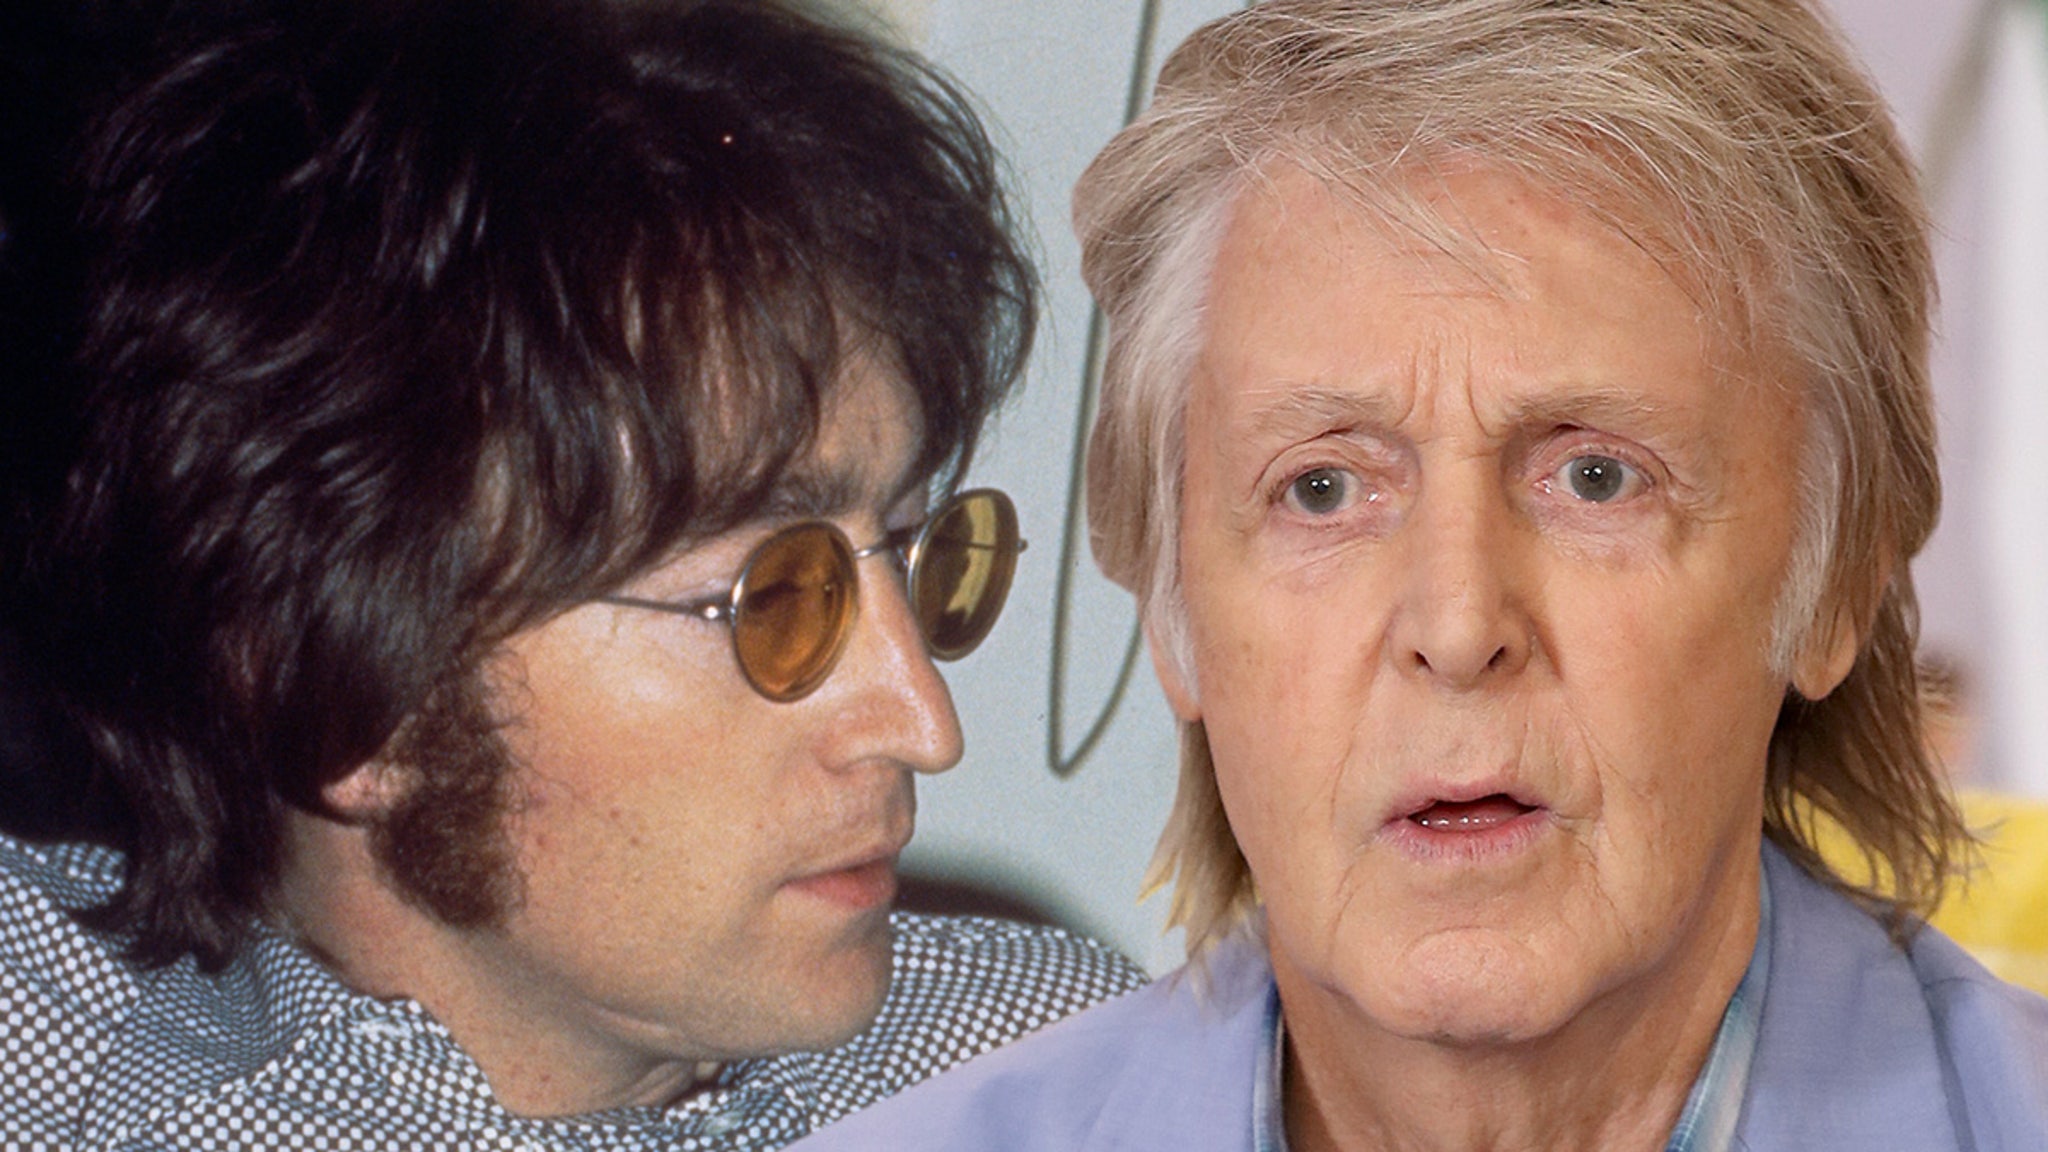 John Lennon's scathing letter to Paul McCartney sold for $70,000 at auction